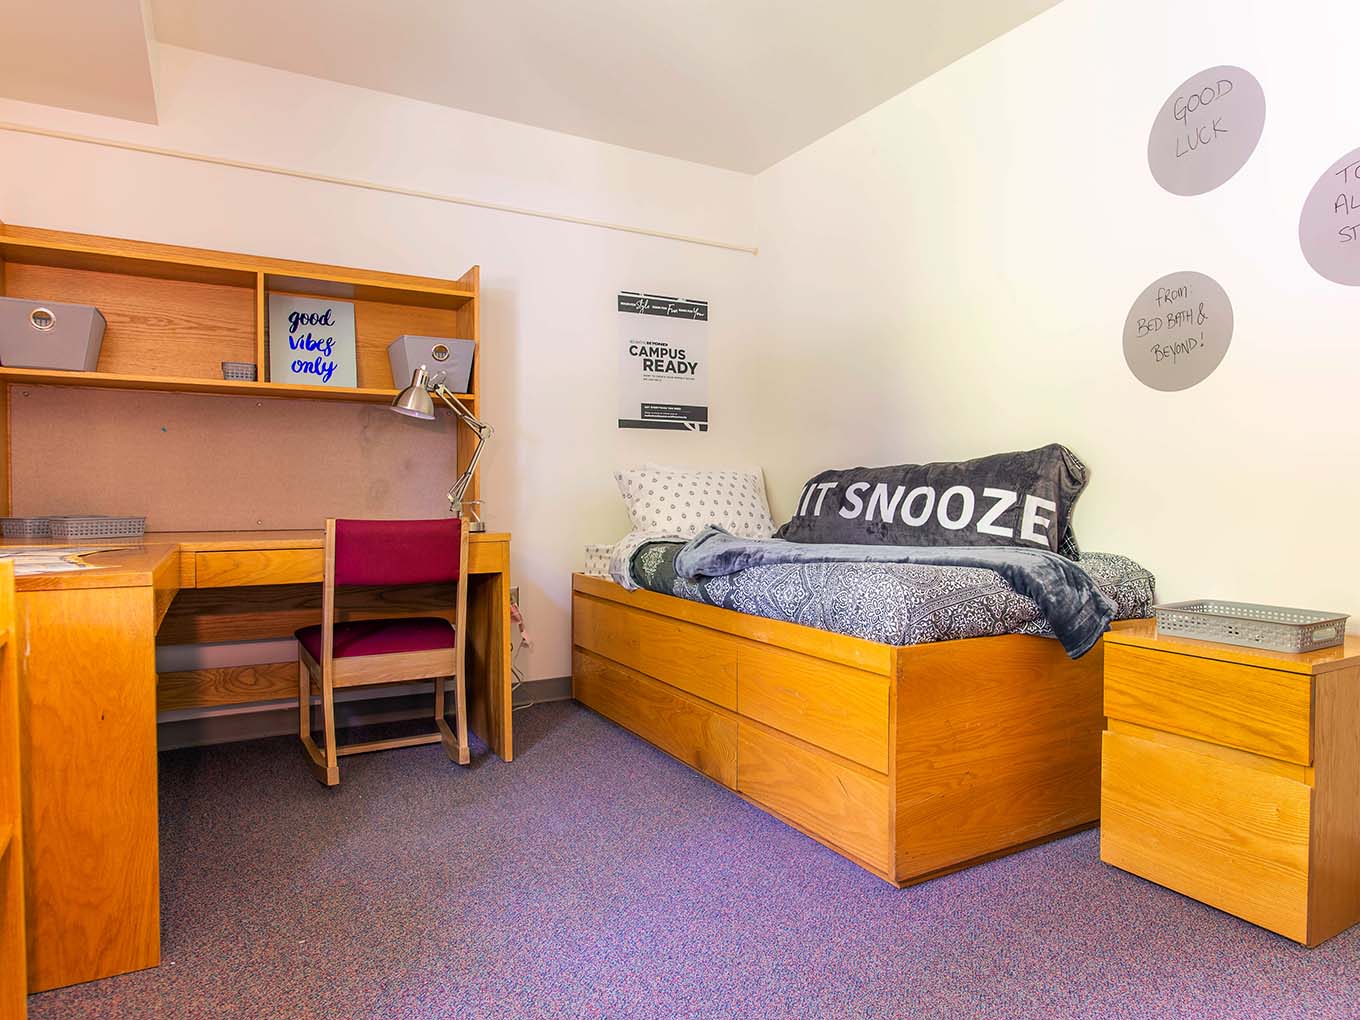 Suite and amenities - Bedroom (1)